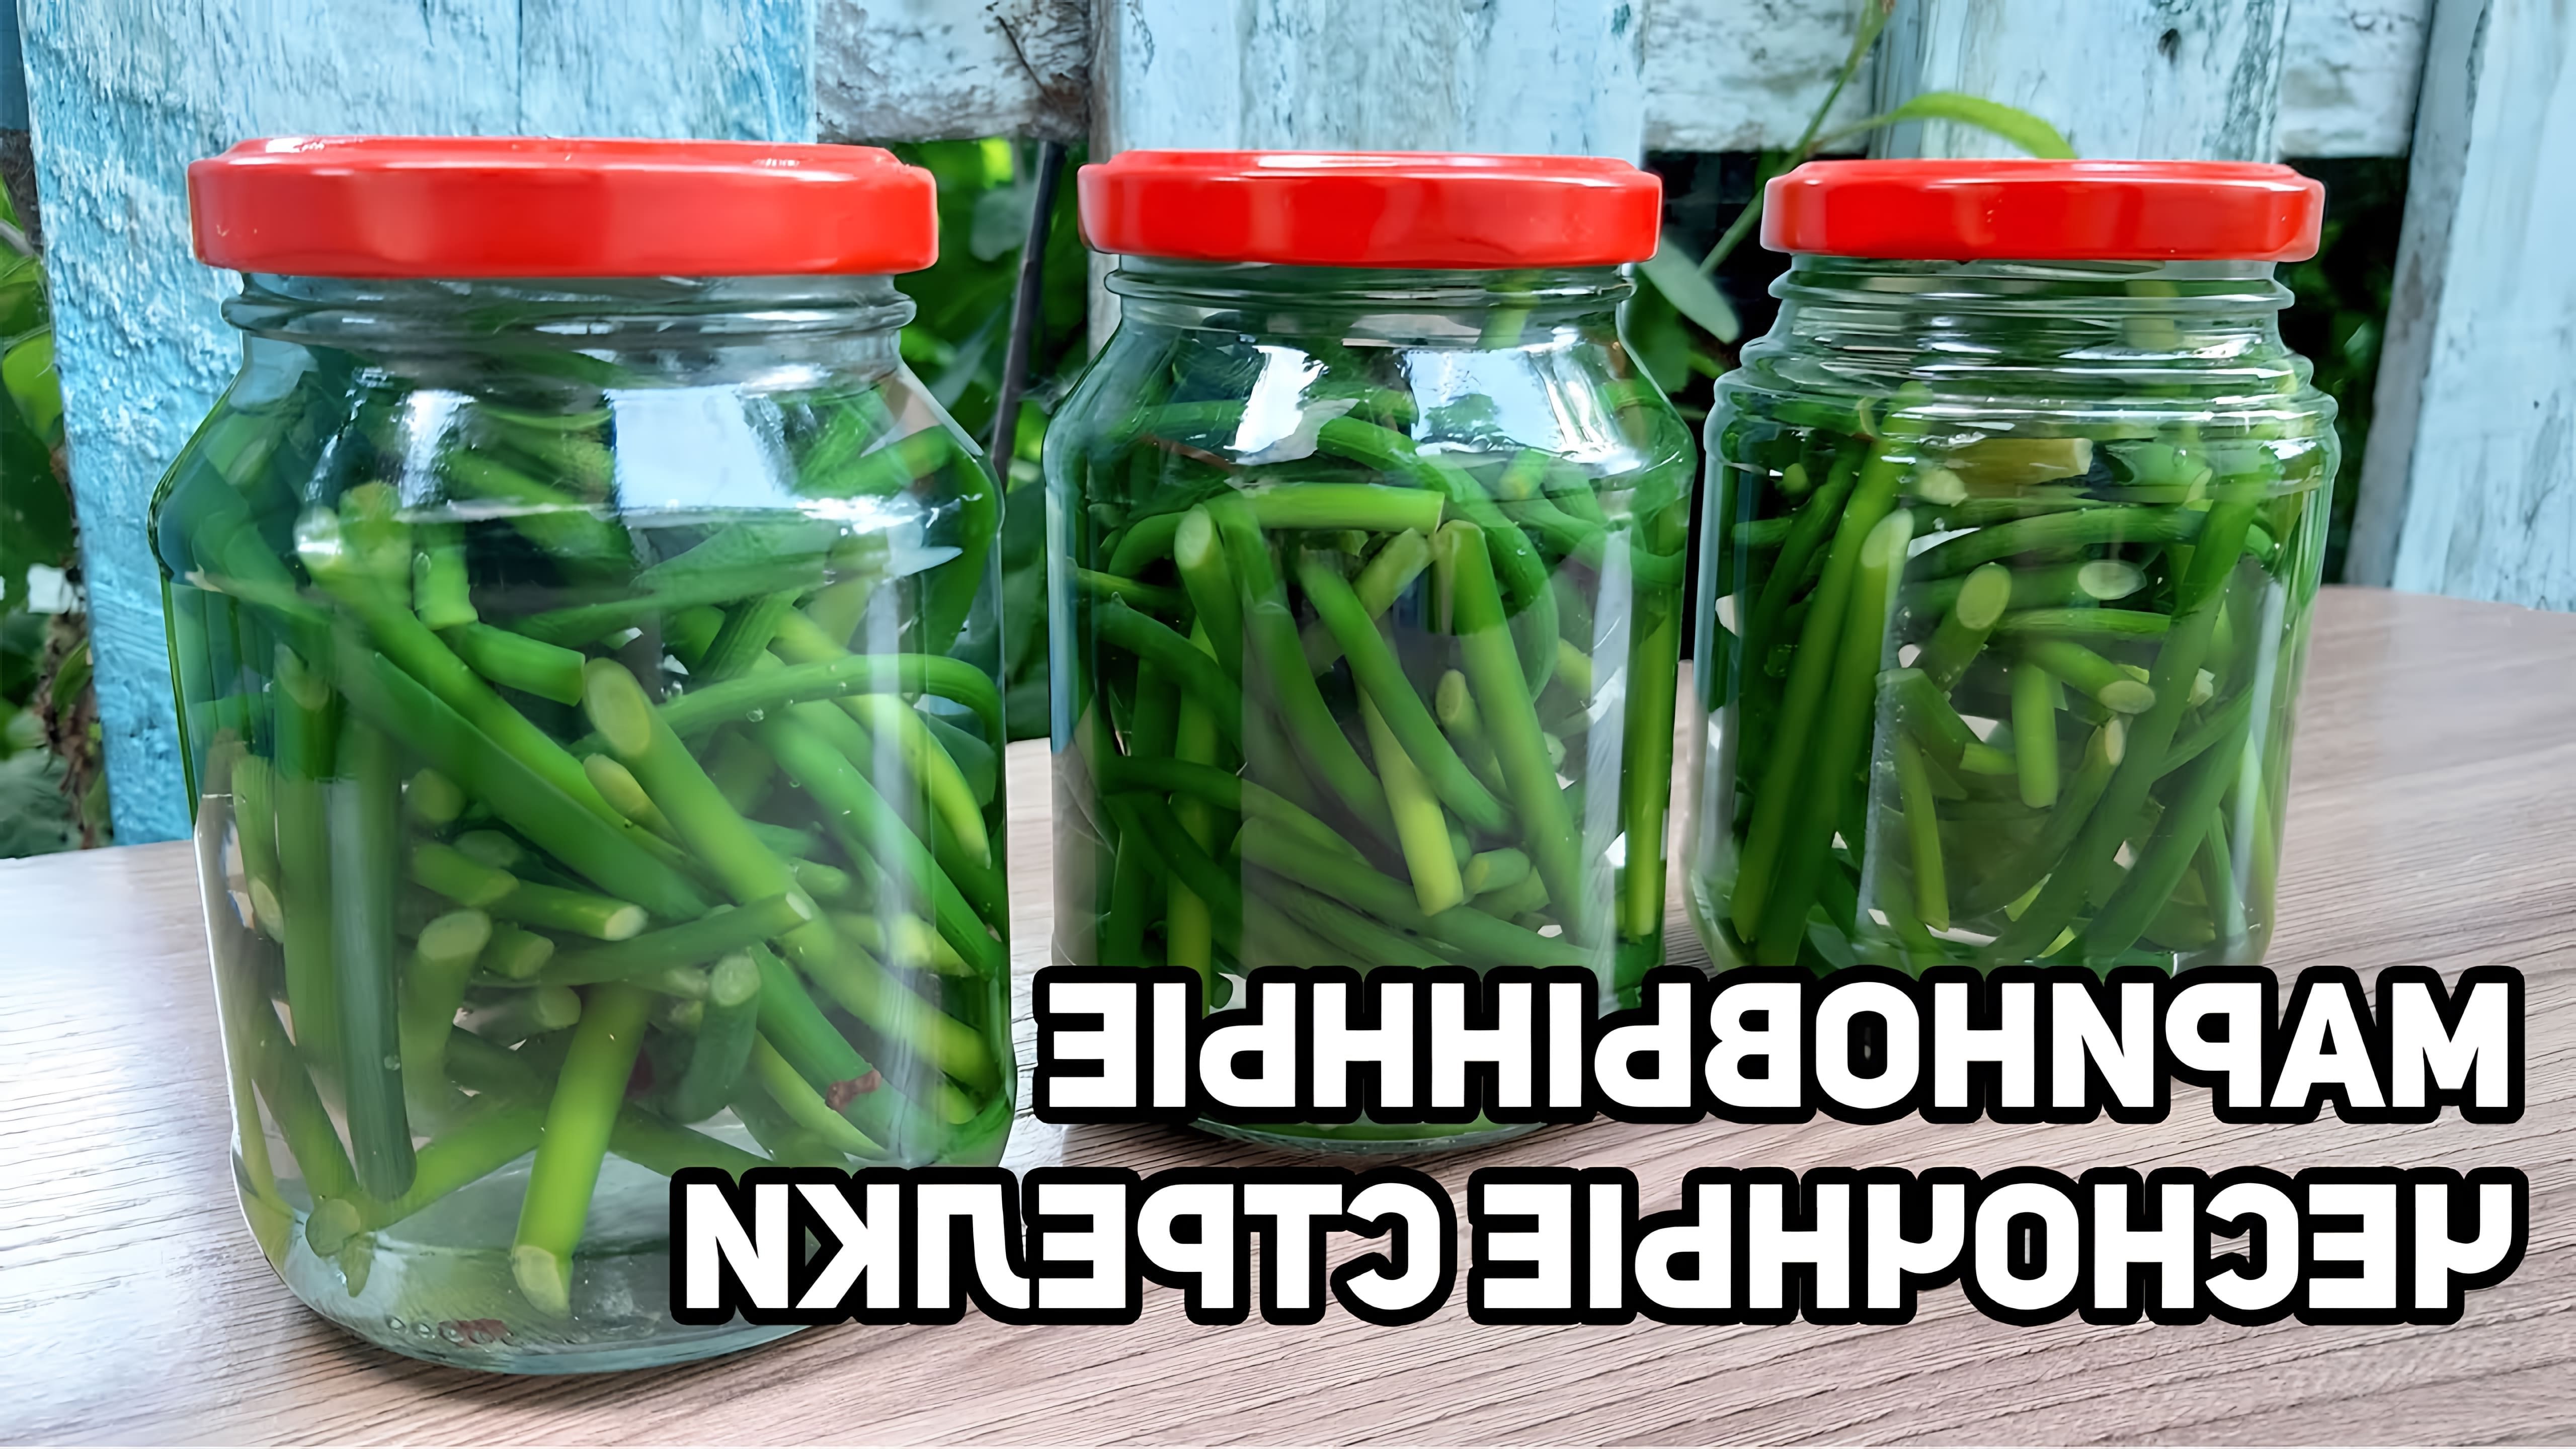 В этом видео рассказывается о приготовлении маринованных чесночных стрелок, которые являются любимым блюдом корейцев